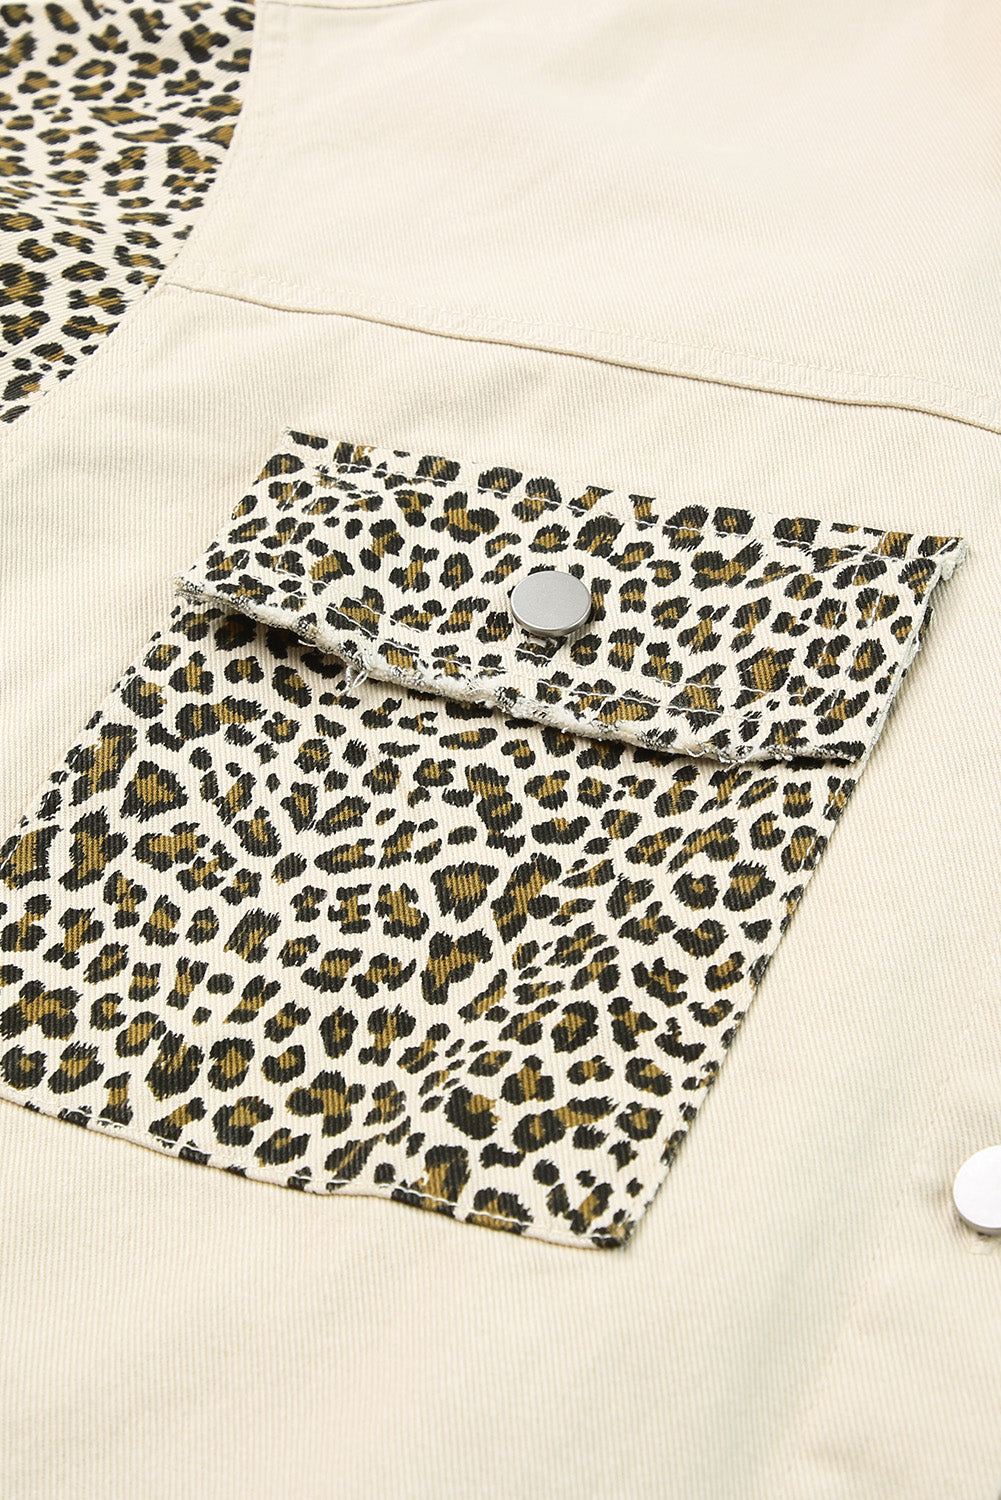 Aprikosenfarbene Plus-Size-Jeansjacke mit Leopardenärmeln und offenem Saum